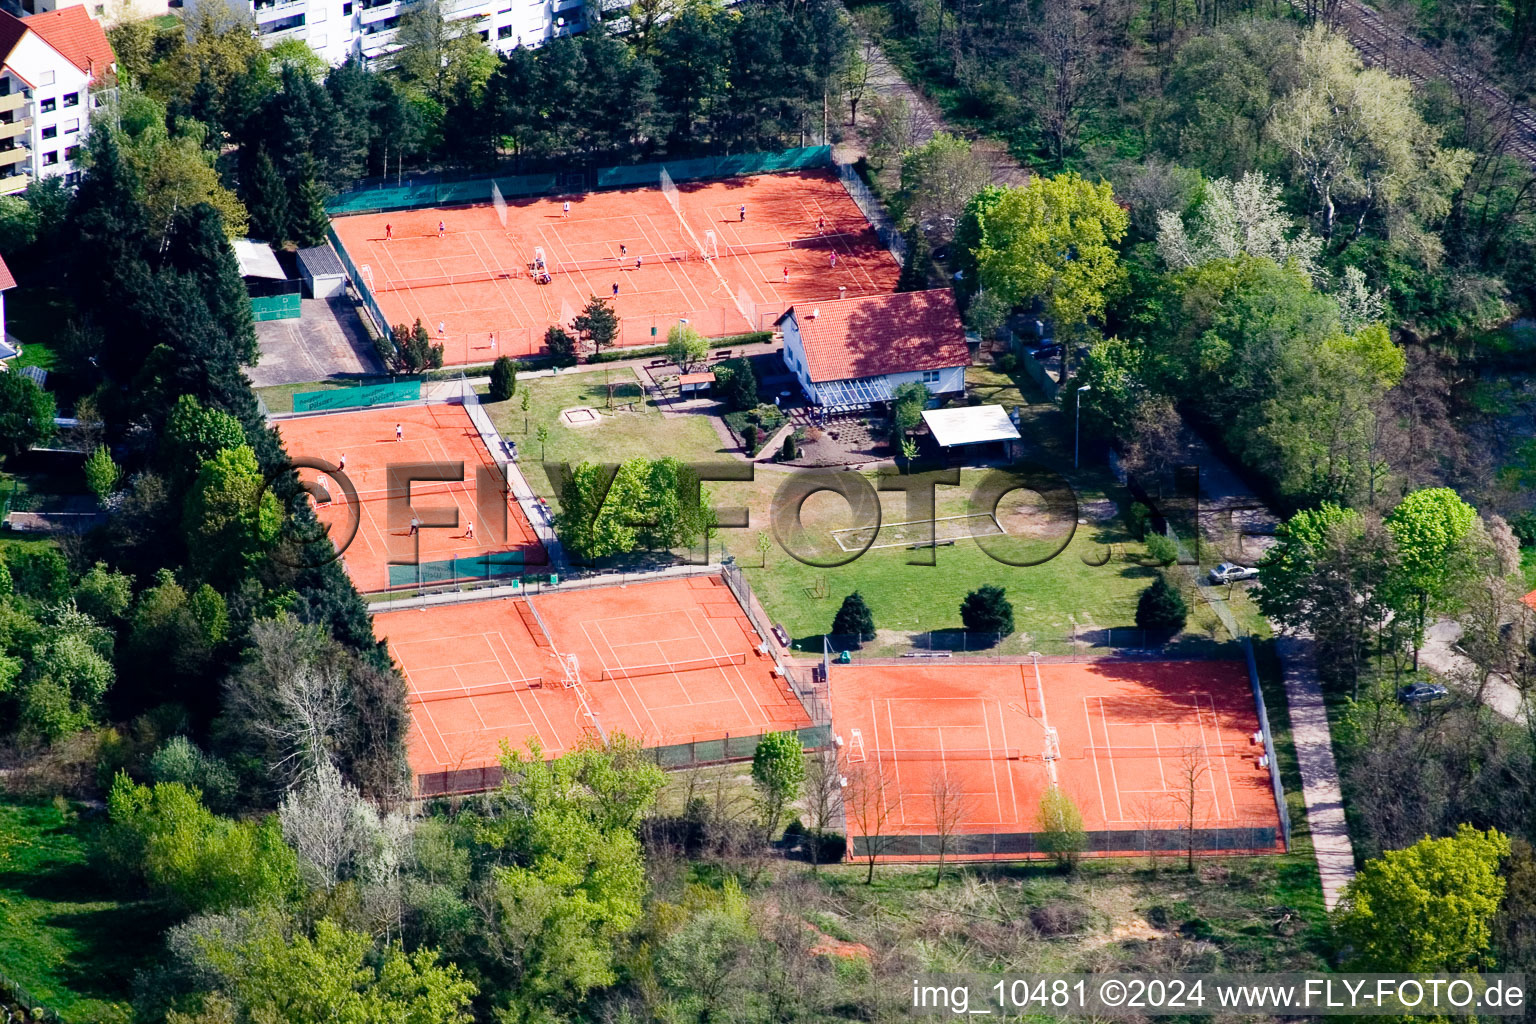 Photographie aérienne de Club de tennis à Jockgrim dans le département Rhénanie-Palatinat, Allemagne